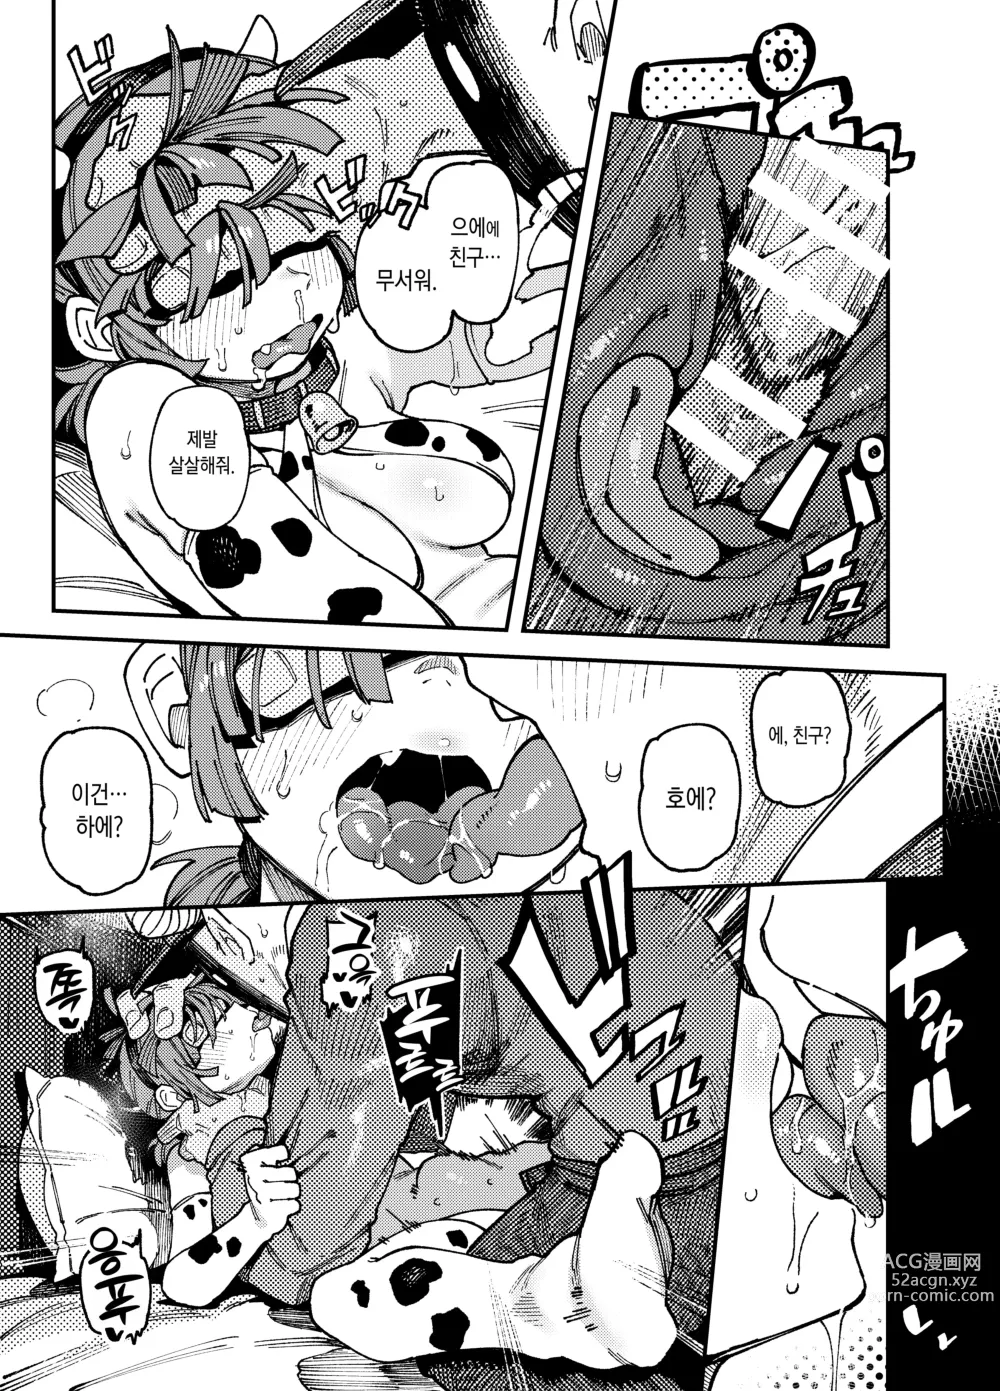 Page 26 of doujinshi 집이 너무 습해서 생긴 환각을 유발하는 버섯을 잘못 먹고 발정난 뒤의 이야기